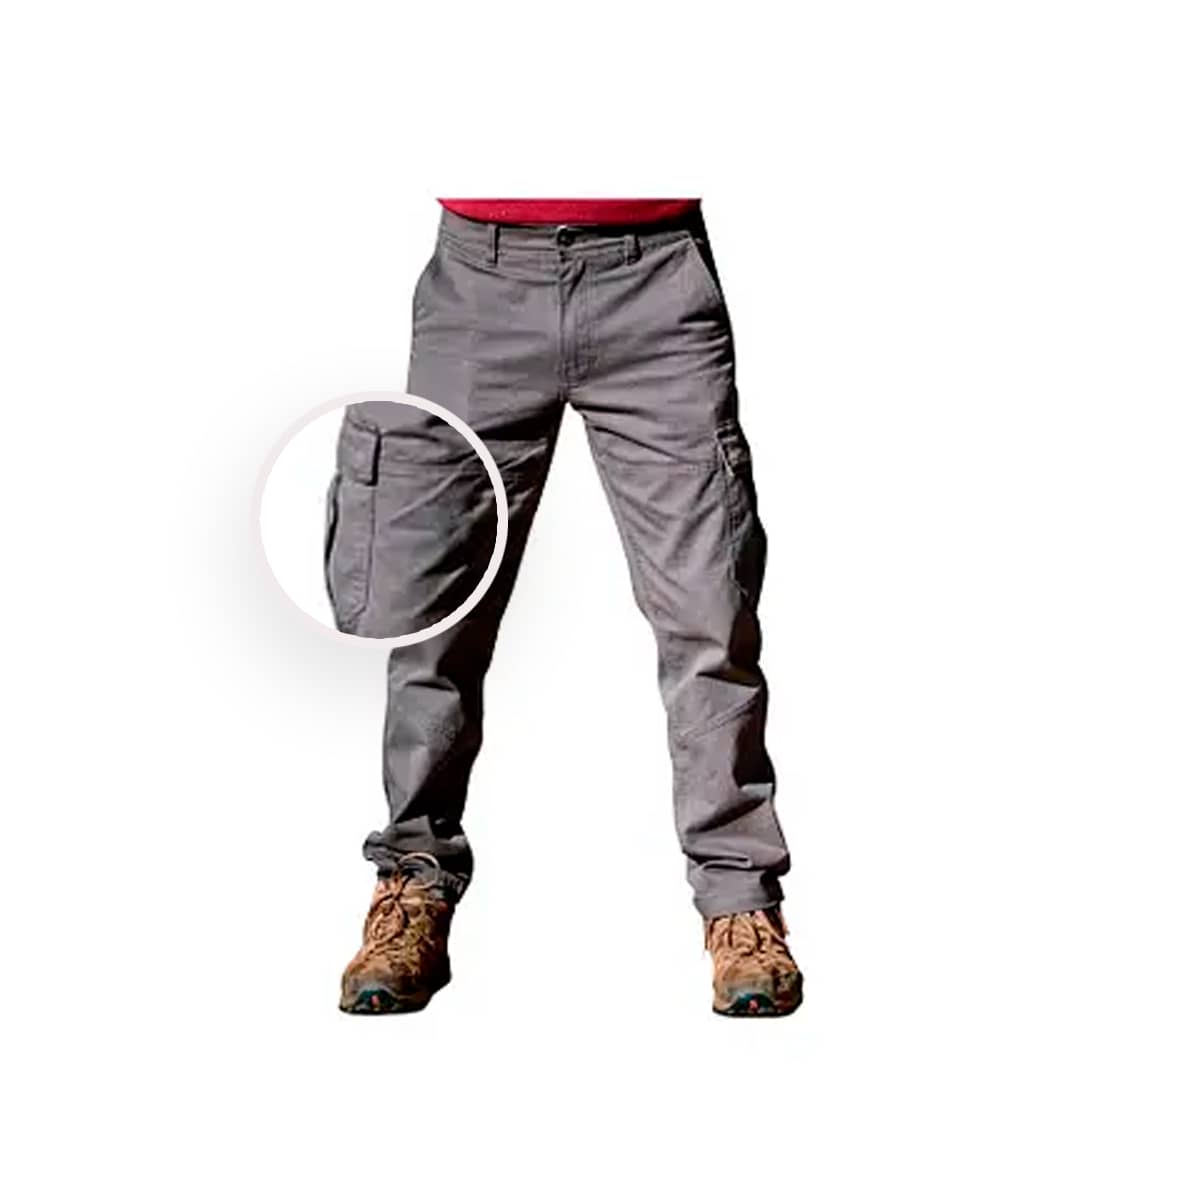 Pantalon Pampero Cargo Trabajo Hombre Reforzado Original